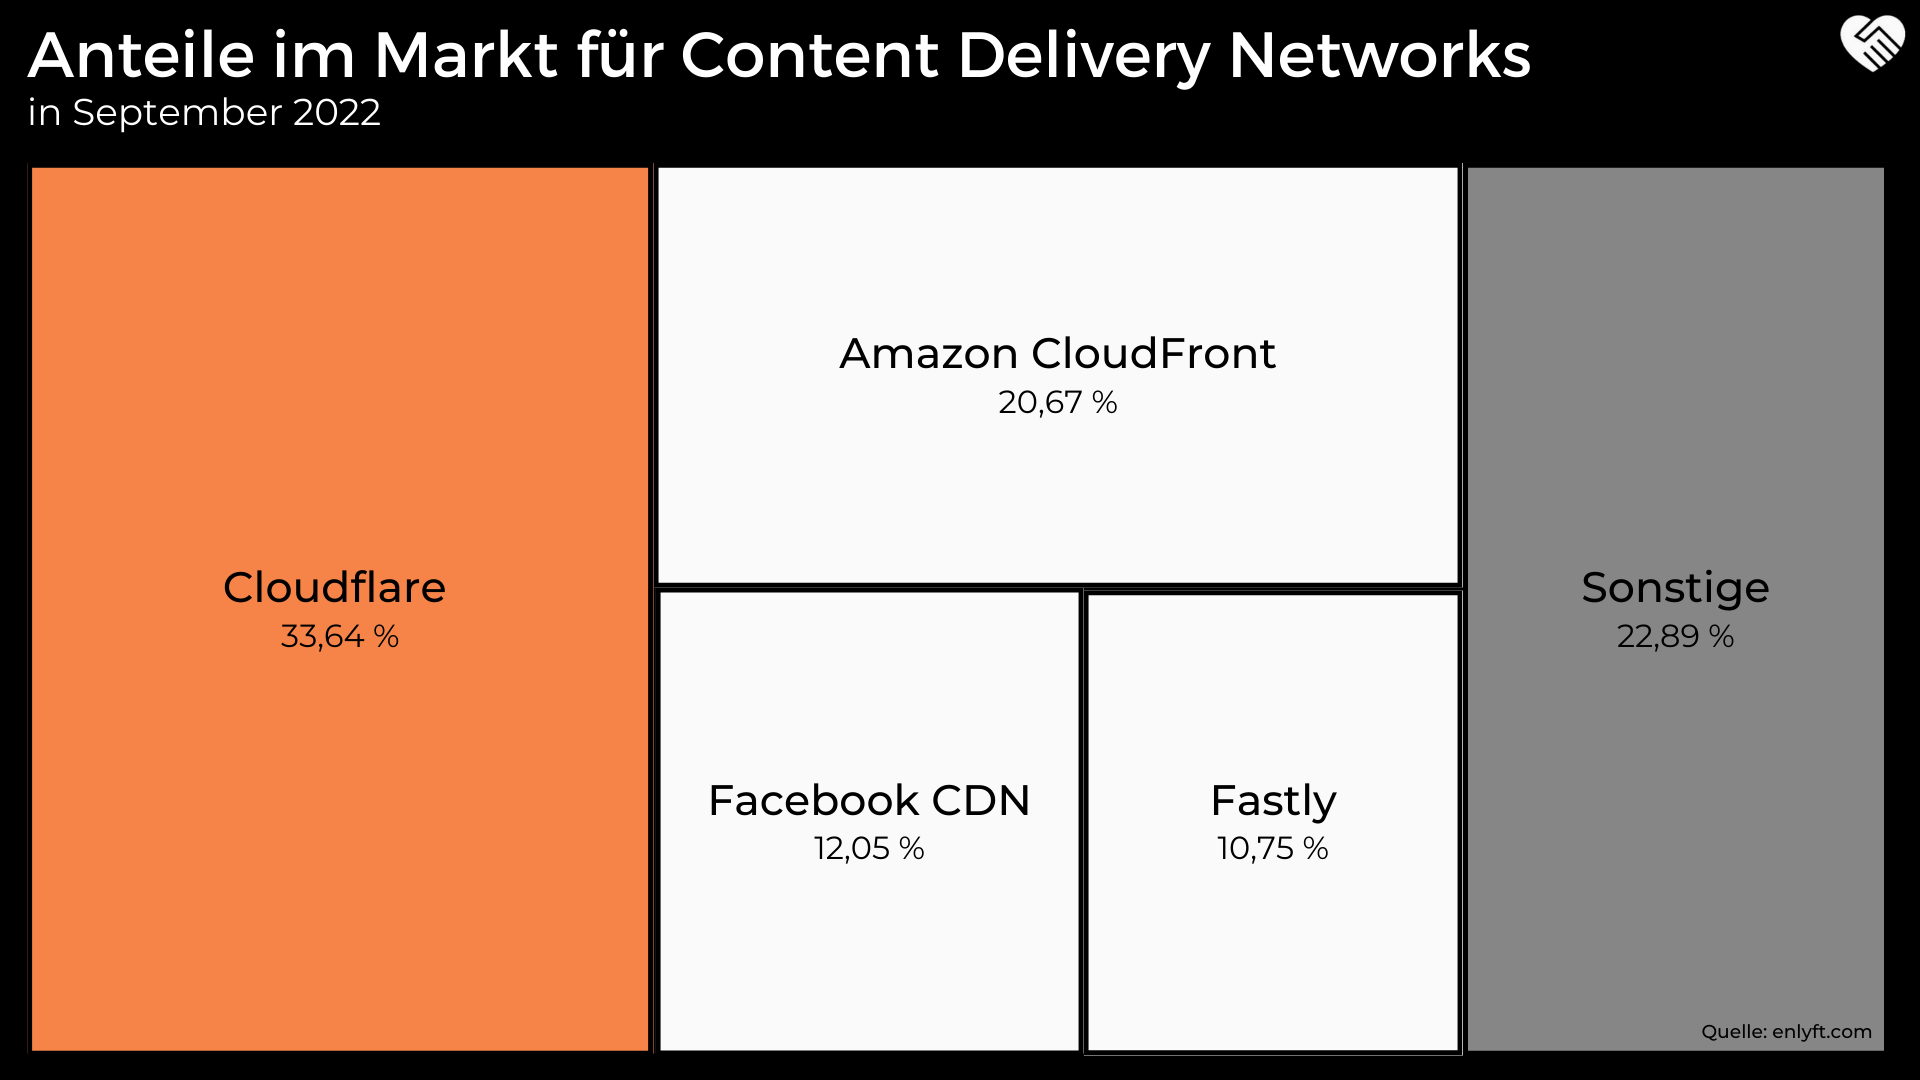 Anteile im Markt für Content Delivery Networks von Cloudflare